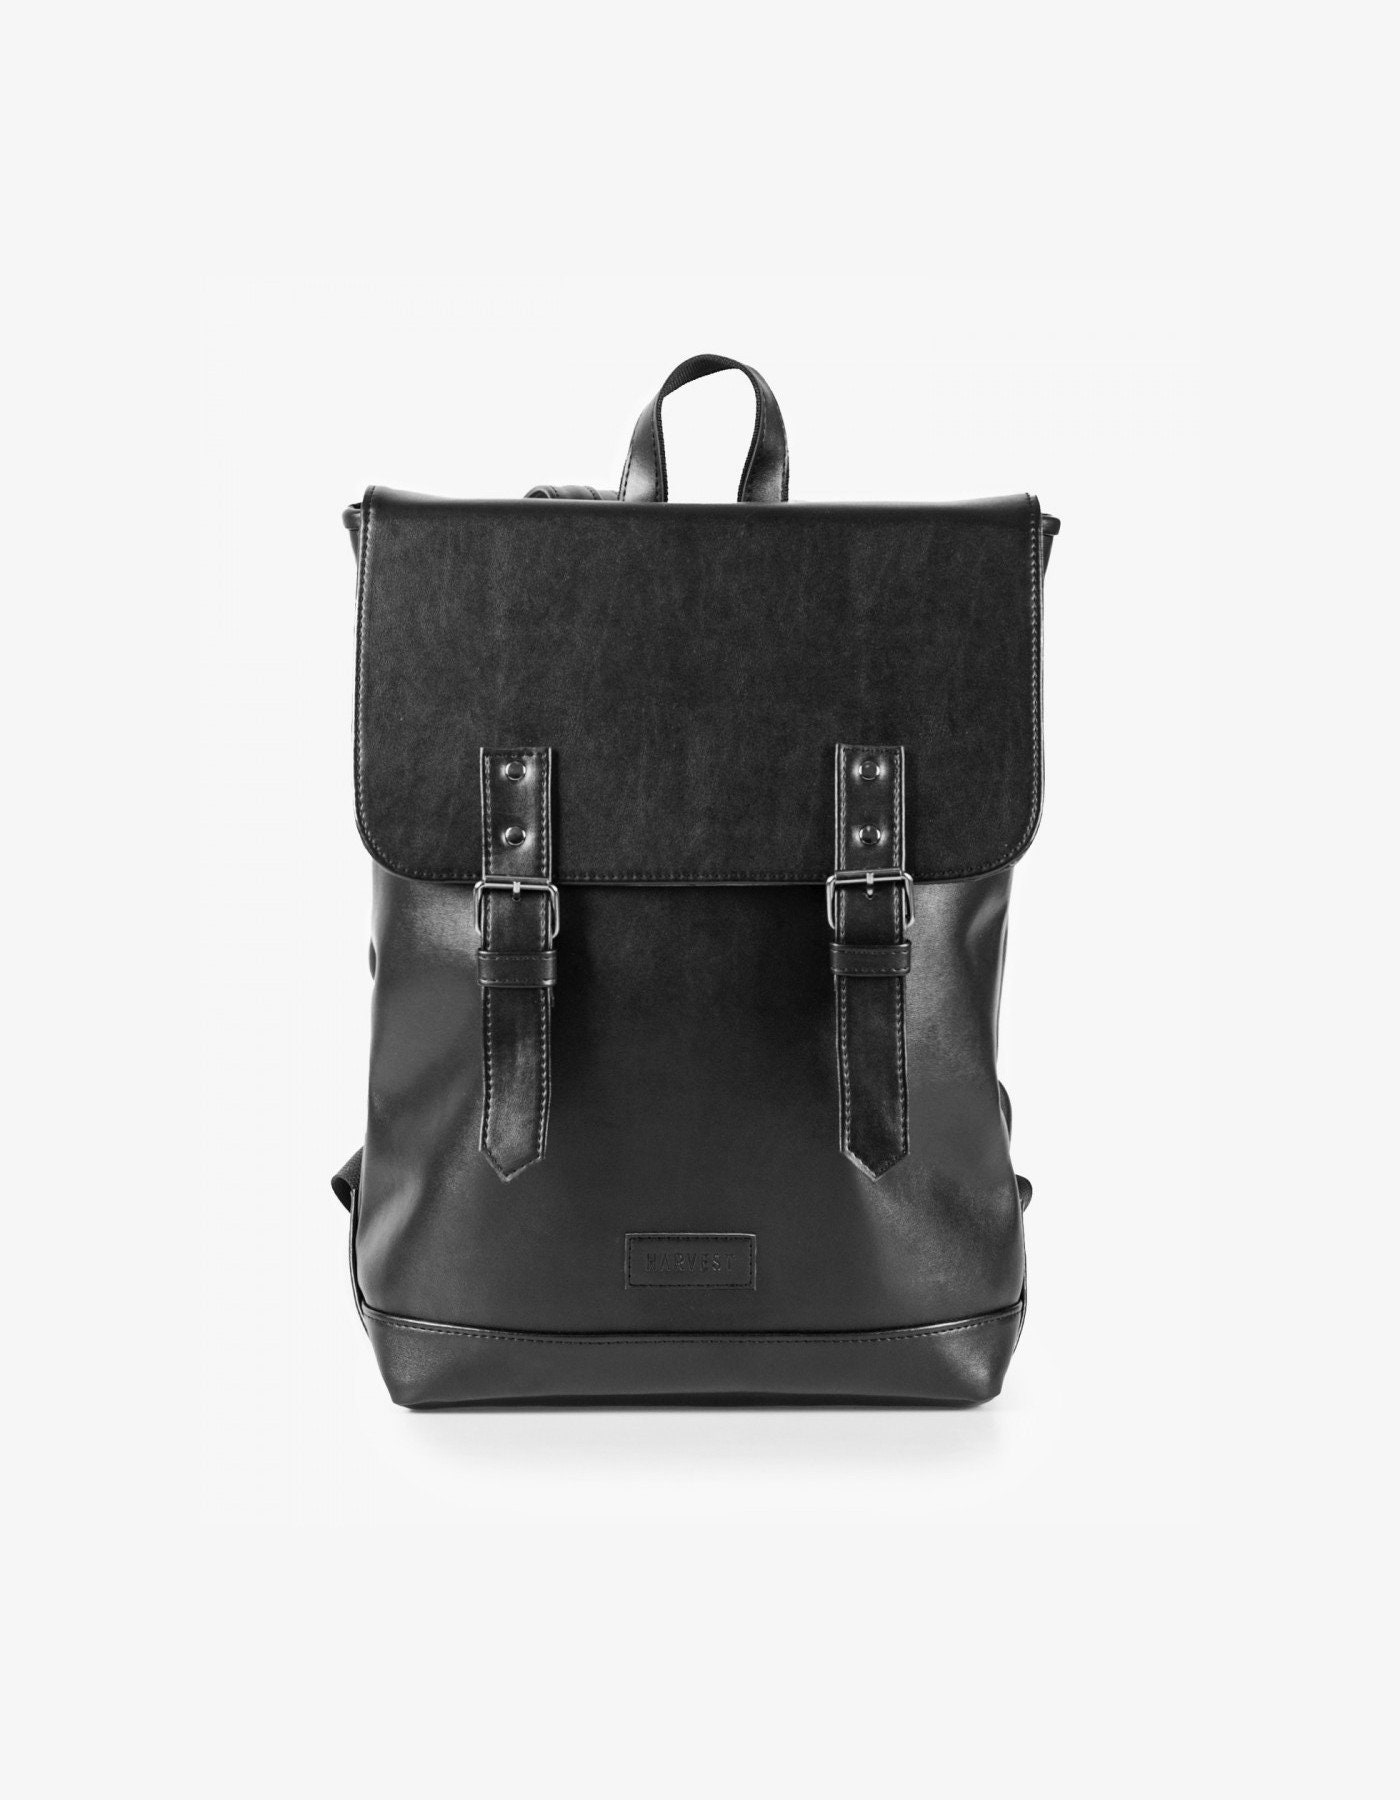 Black Leather Backpack Buckle Backpack City Backpack Satchel | Etsy